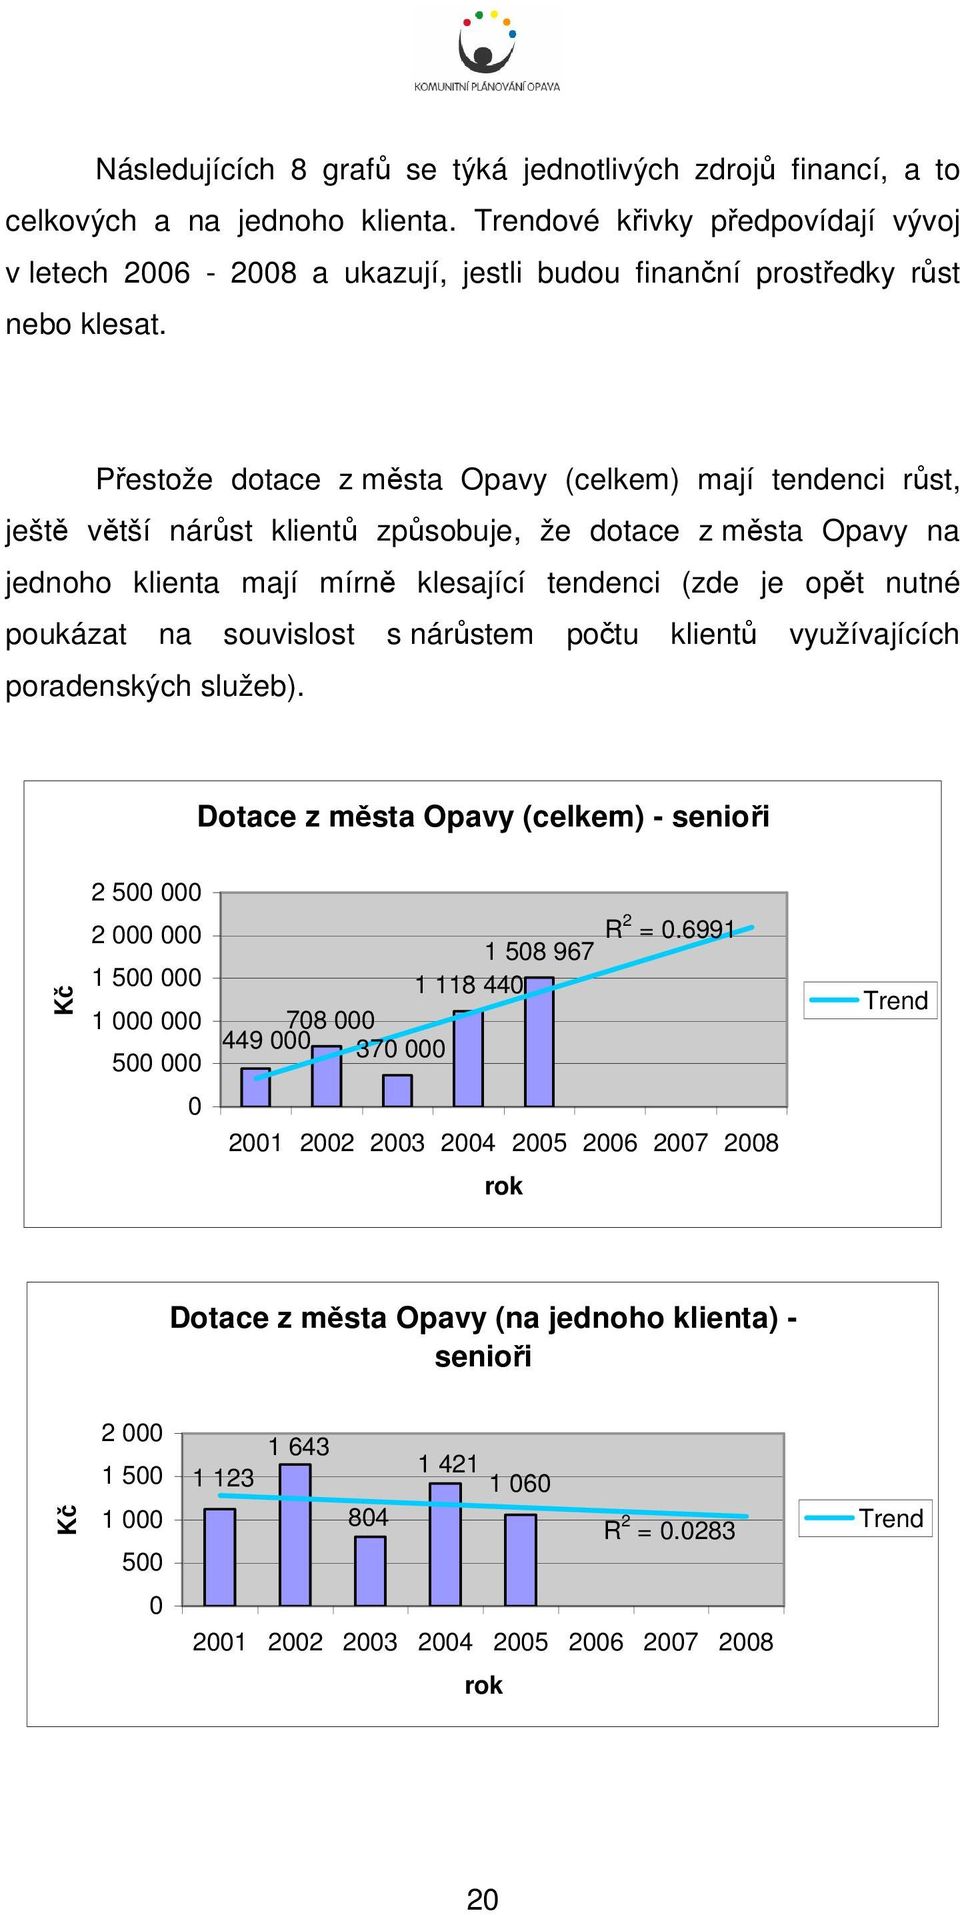 Přestože dotace z města Opavy (celkem) mají tendenci růst, ještě větší nárůst klientů způsobuje, že dotace z města Opavy na jednoho klienta mají mírně klesající tendenci (zde je opět